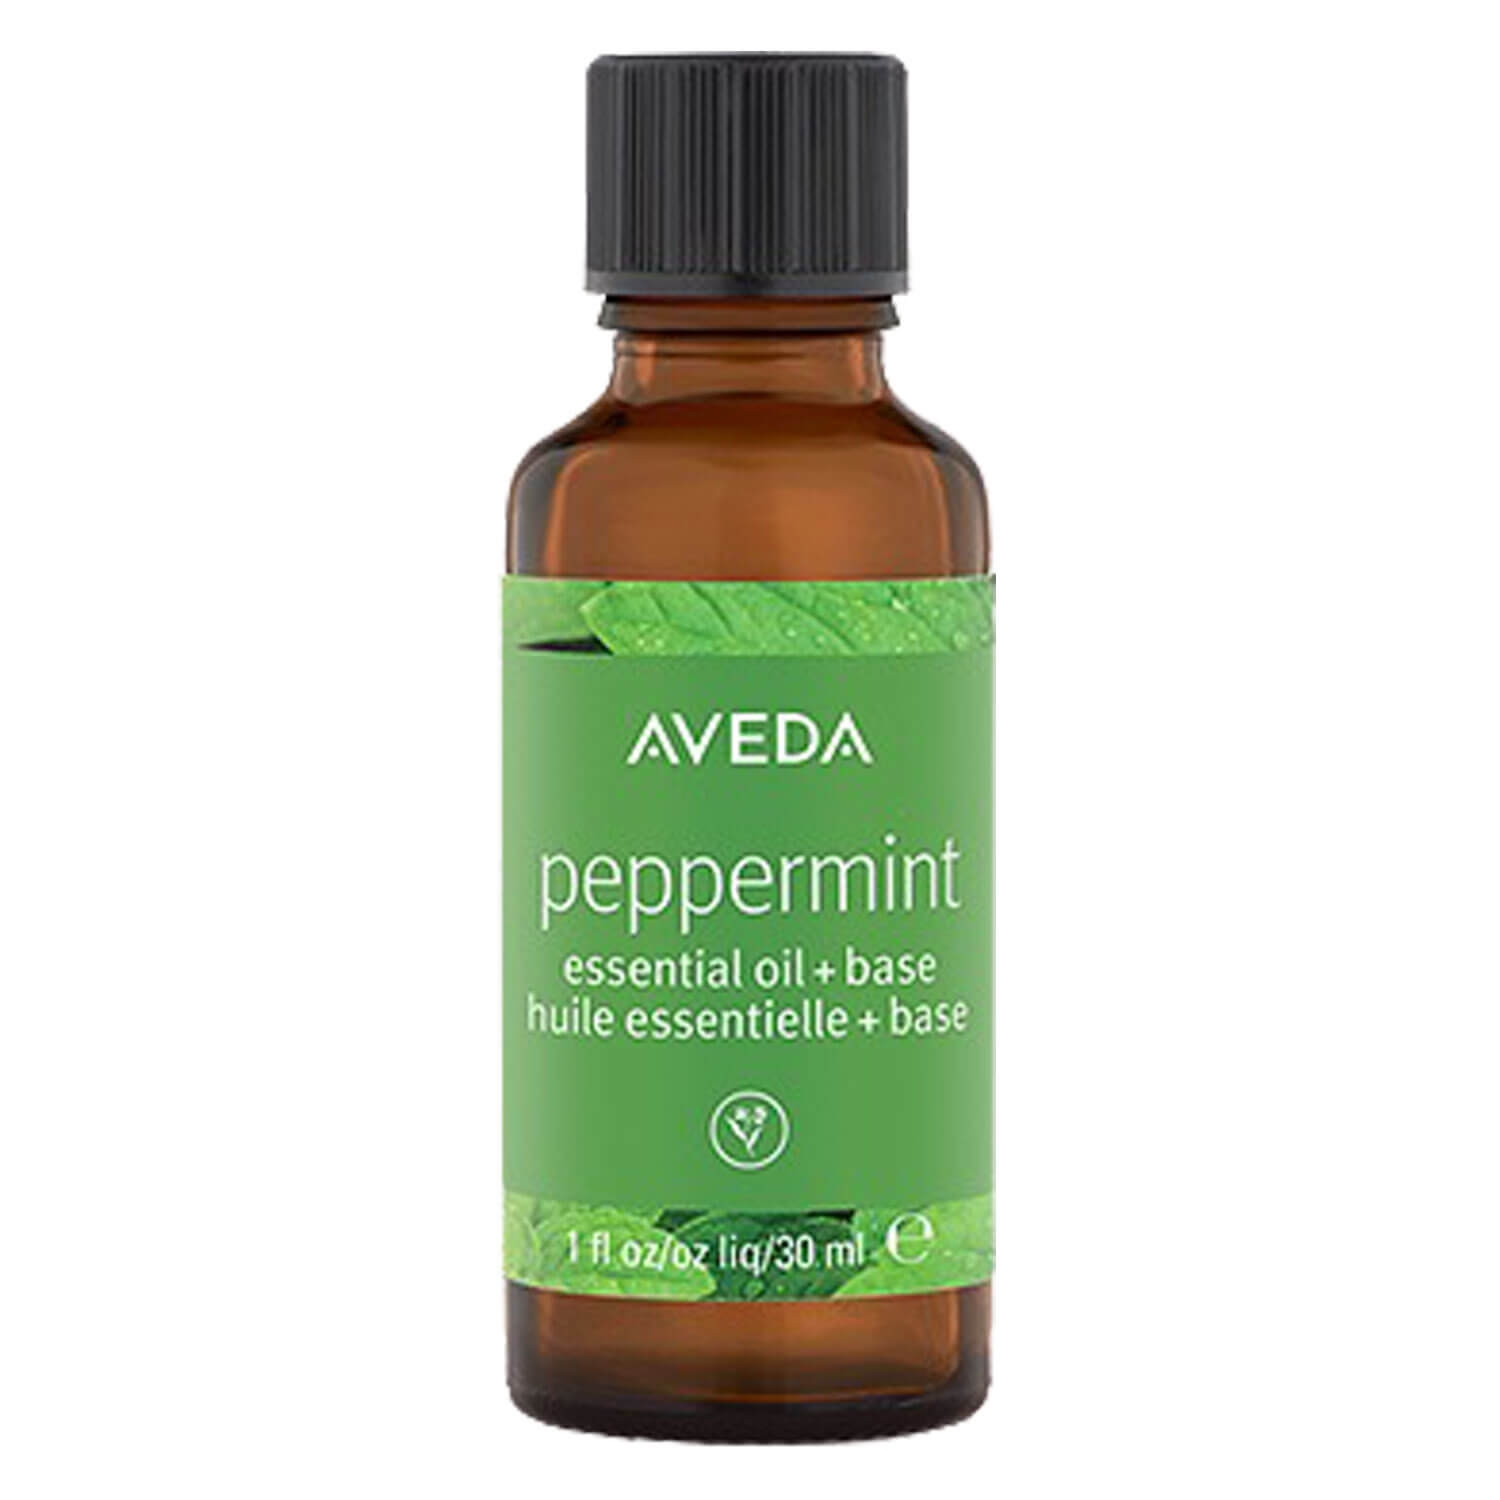 Produktbild von singular note - peppermint oil